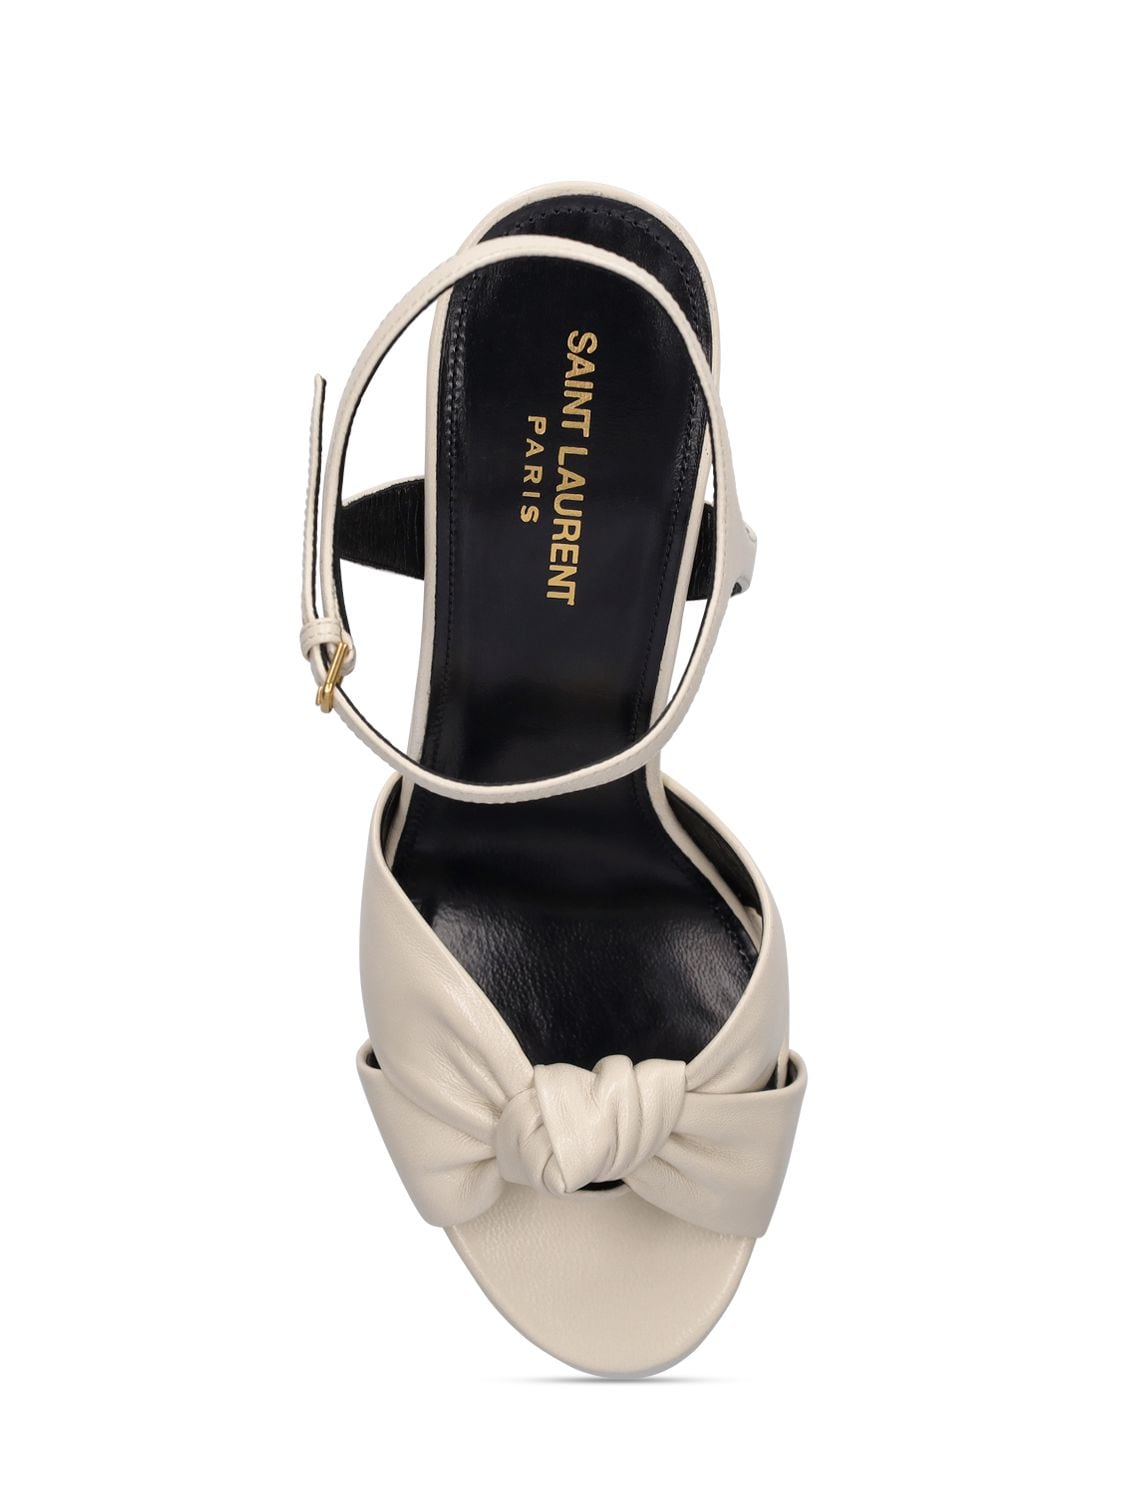 Shop Saint Laurent 85mm Bianca Leather Platform Sandals In Pearl